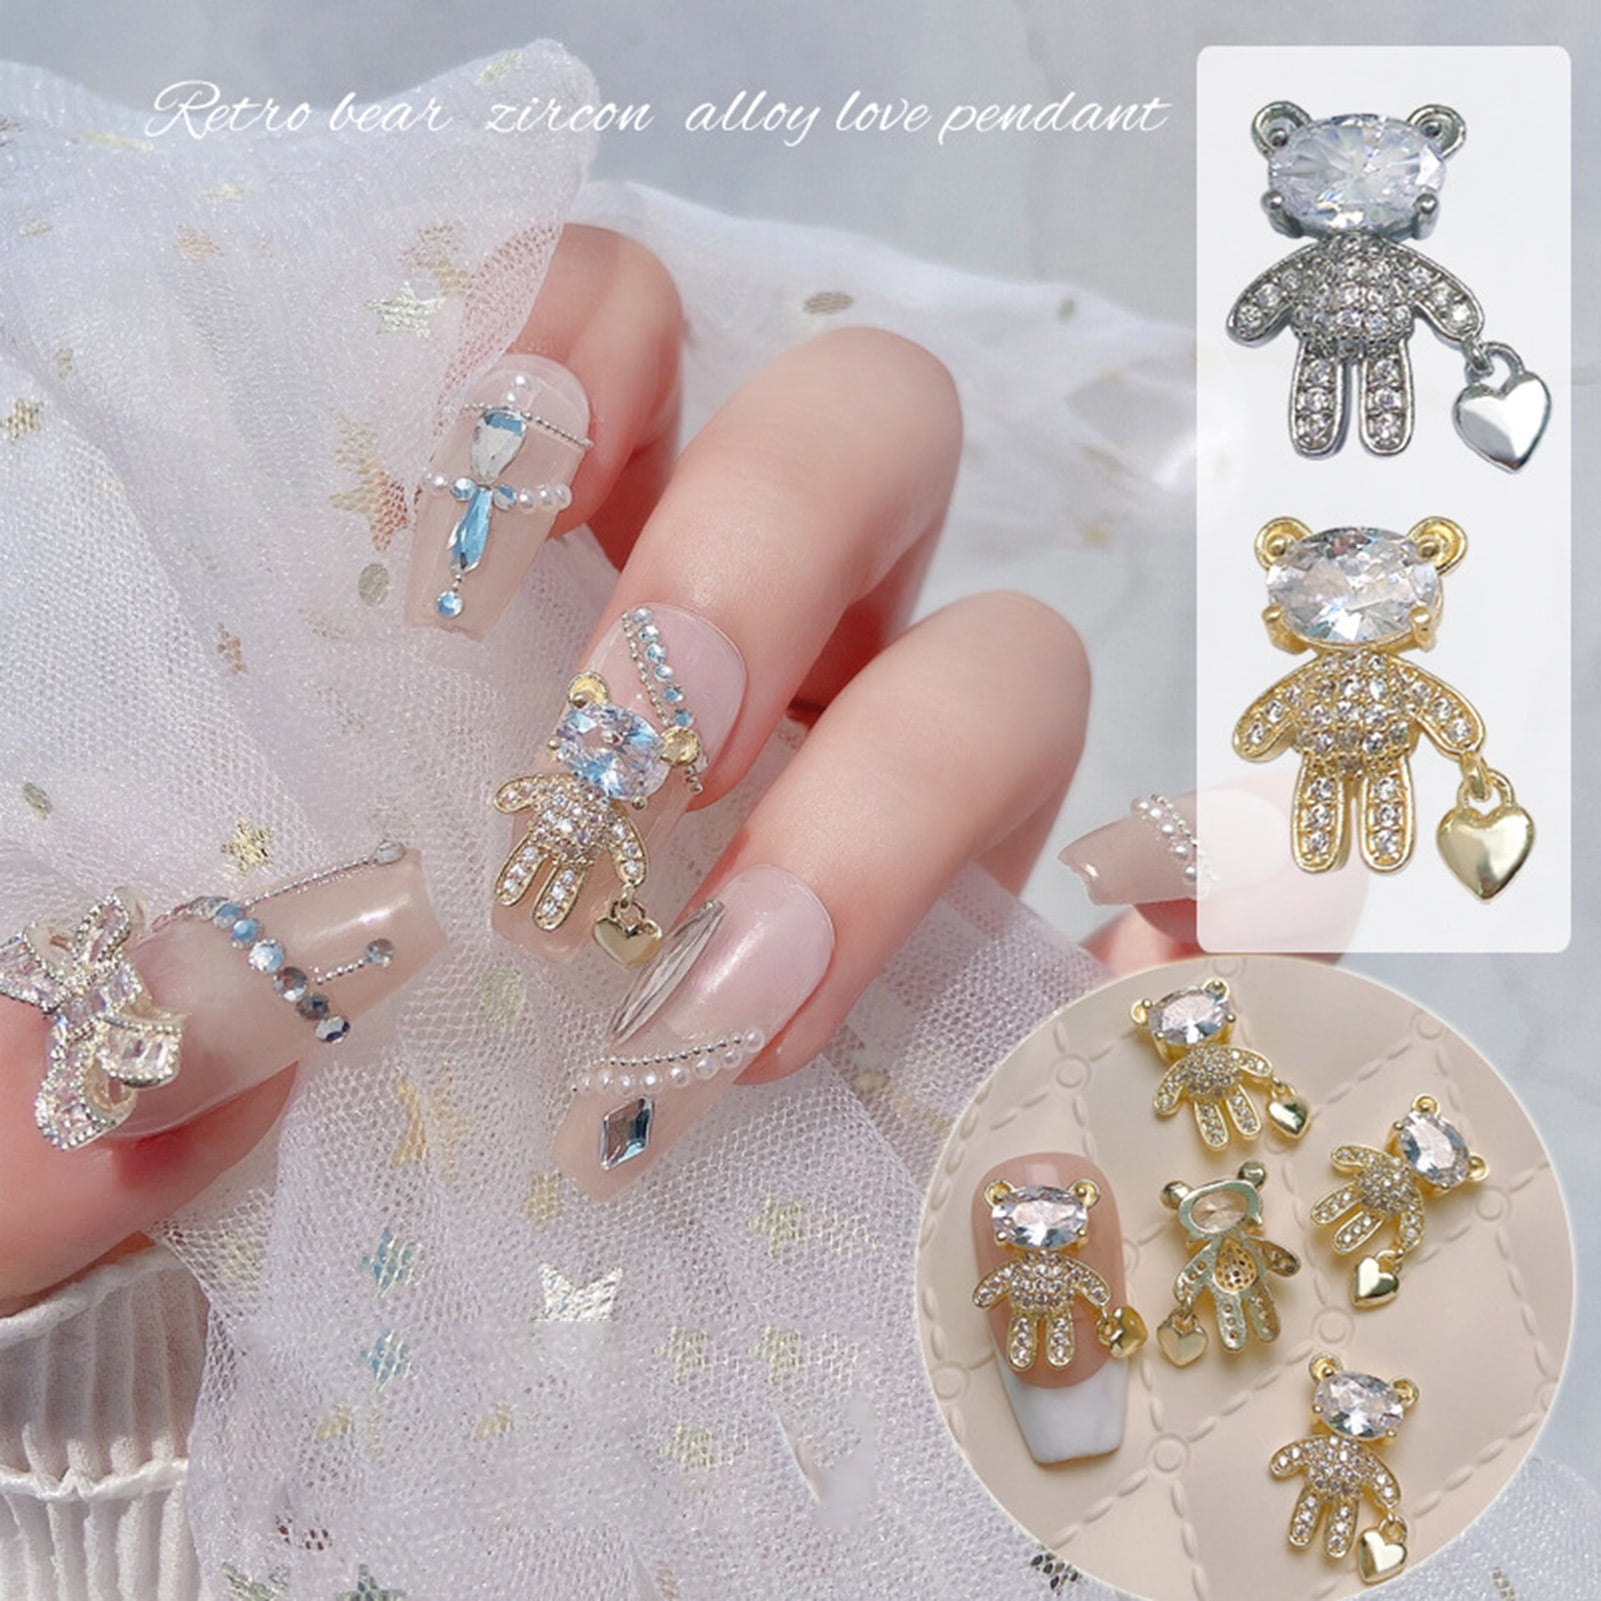 3D Hello Kitty Nail Art Charm - Gold - 12pcs - Cali Beauty Supply